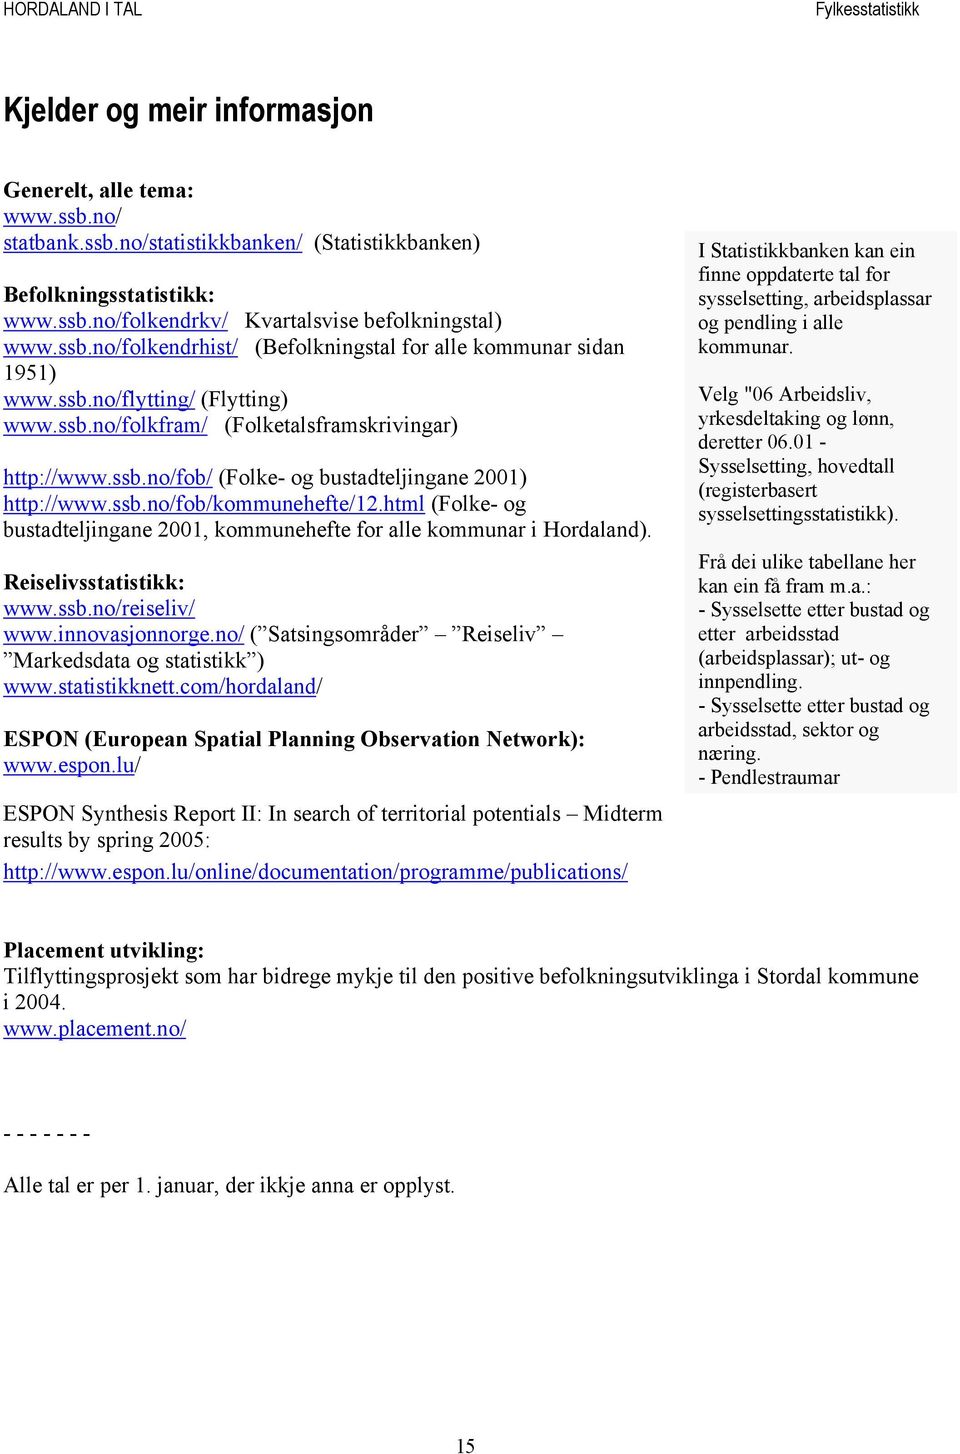 html (Folke- og bustadteljingane 2001, kommunehefte for alle kommunar i Hordaland). Reiselivsstatistikk: www.ssb.no/reiseliv/ www.innovasjonnorge.